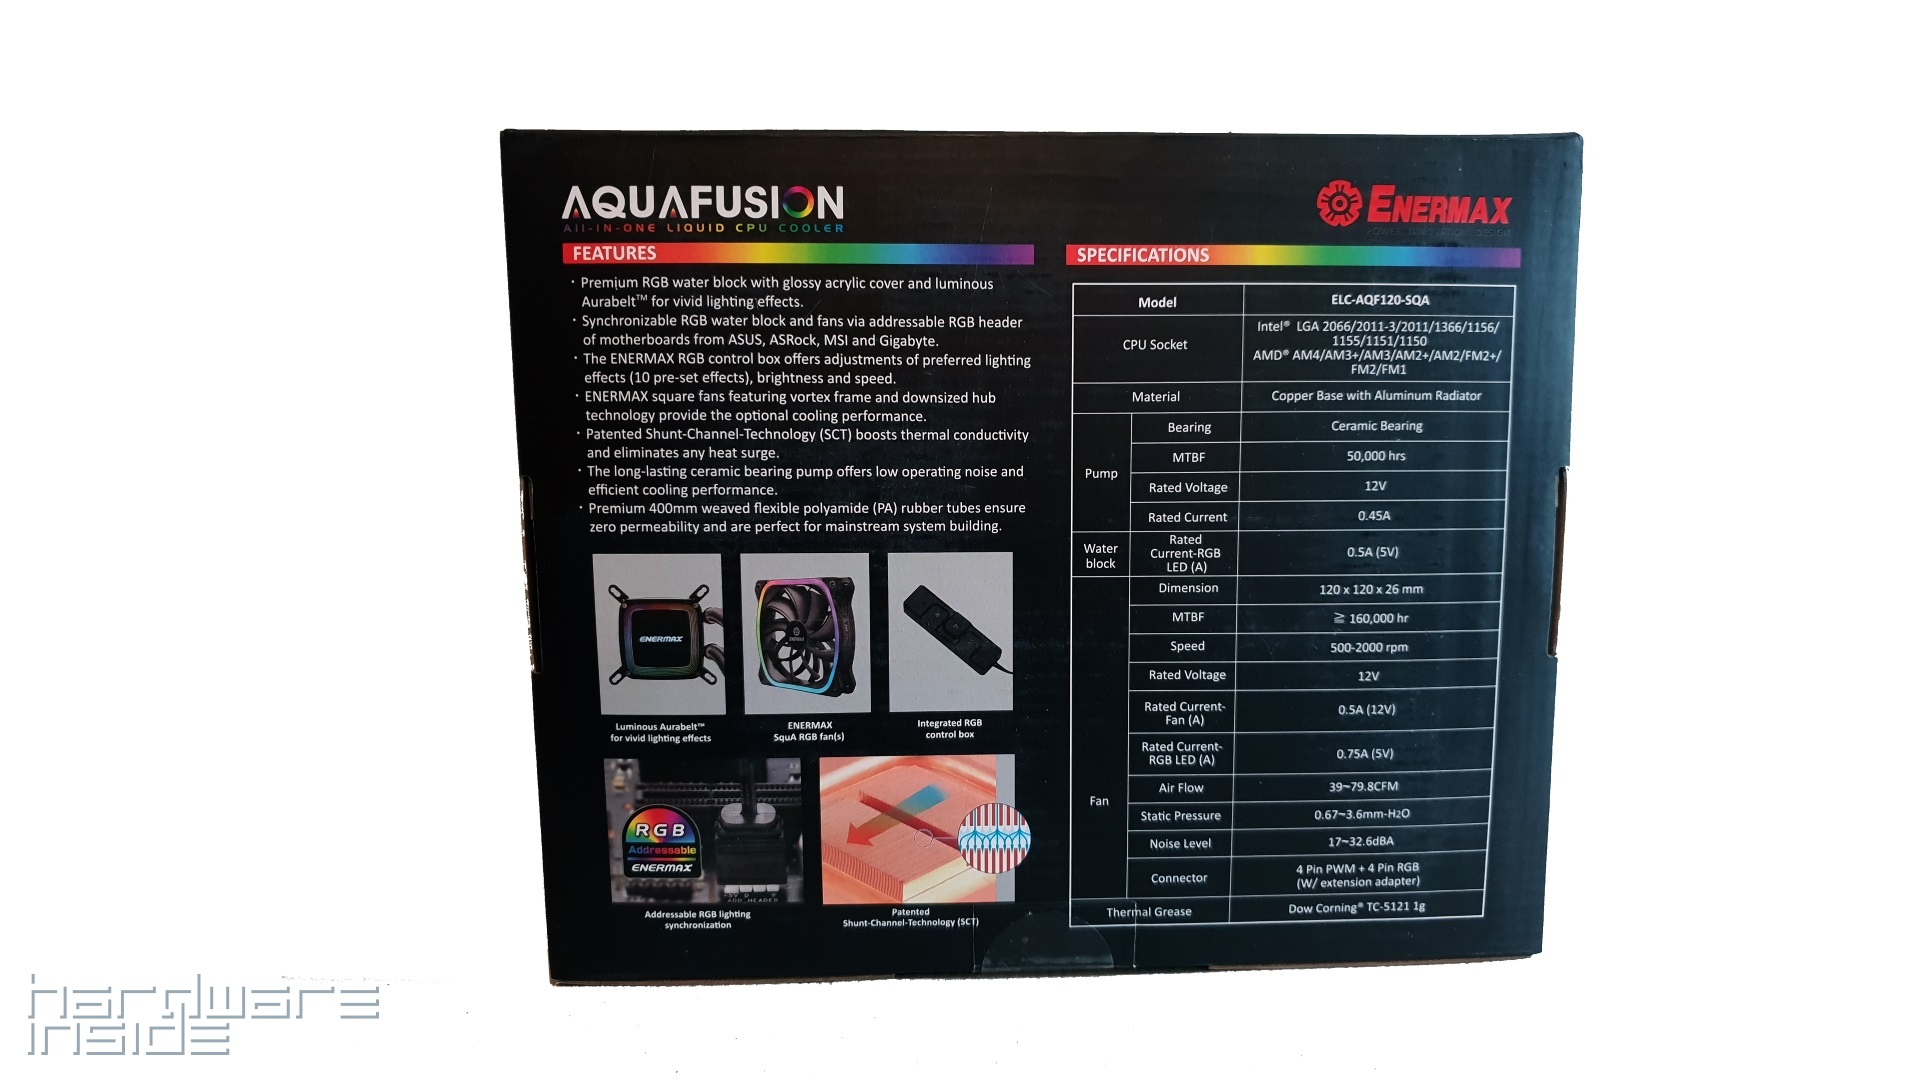 ENERMAX AquaFusion 120 - 3